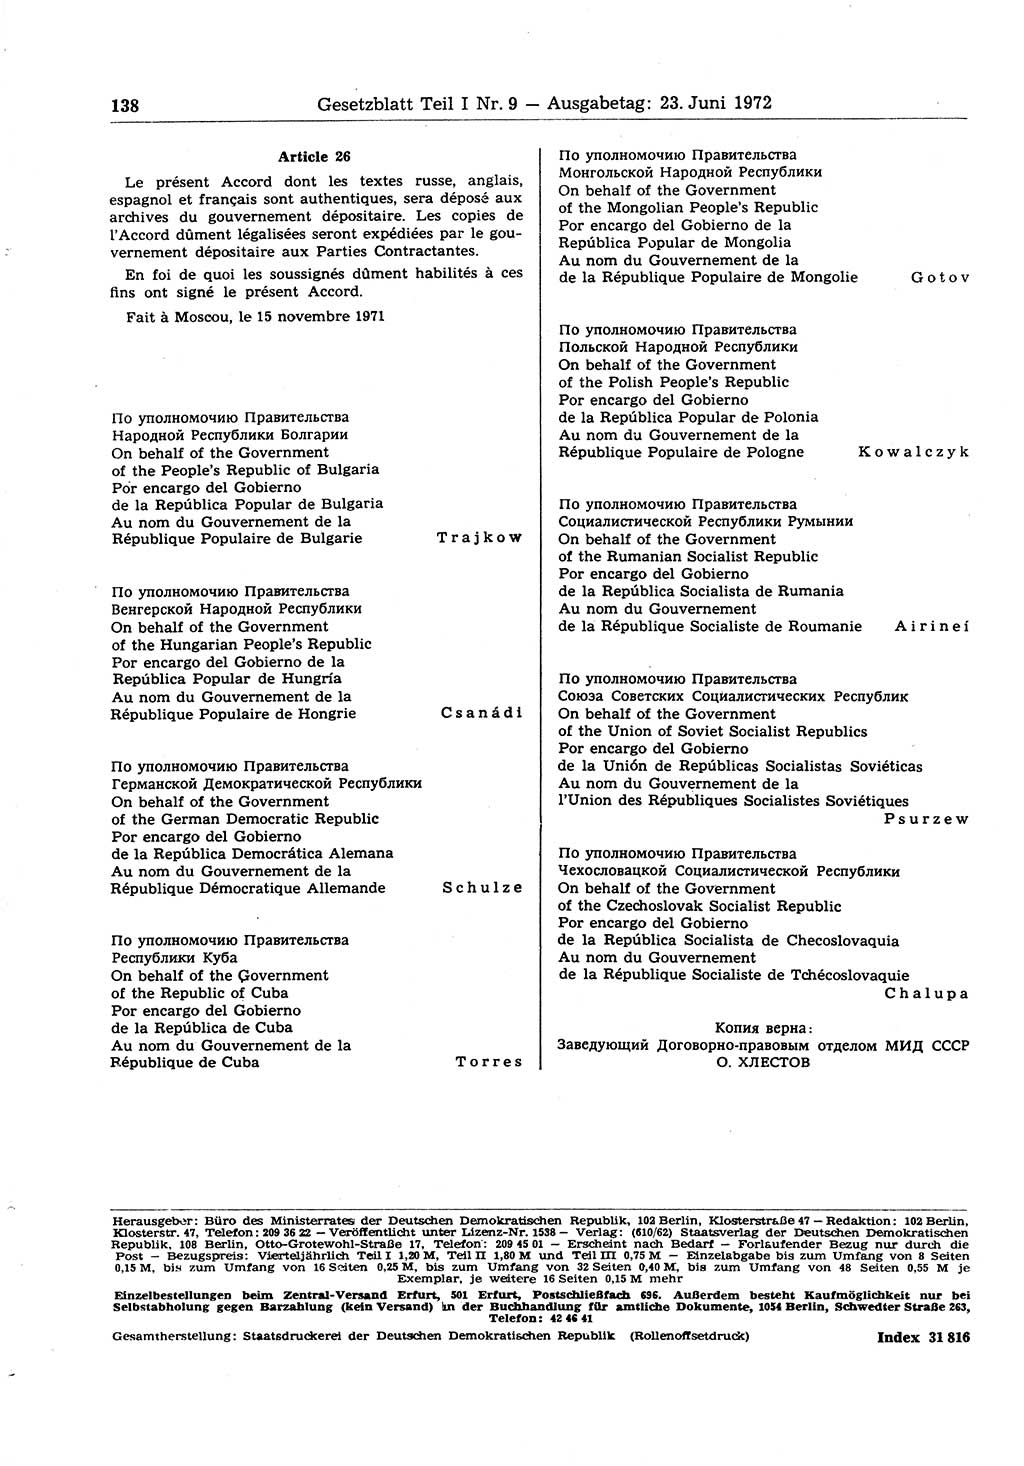 Gesetzblatt (GBl.) der Deutschen Demokratischen Republik (DDR) Teil Ⅰ 1972, Seite 138 (GBl. DDR Ⅰ 1972, S. 138)